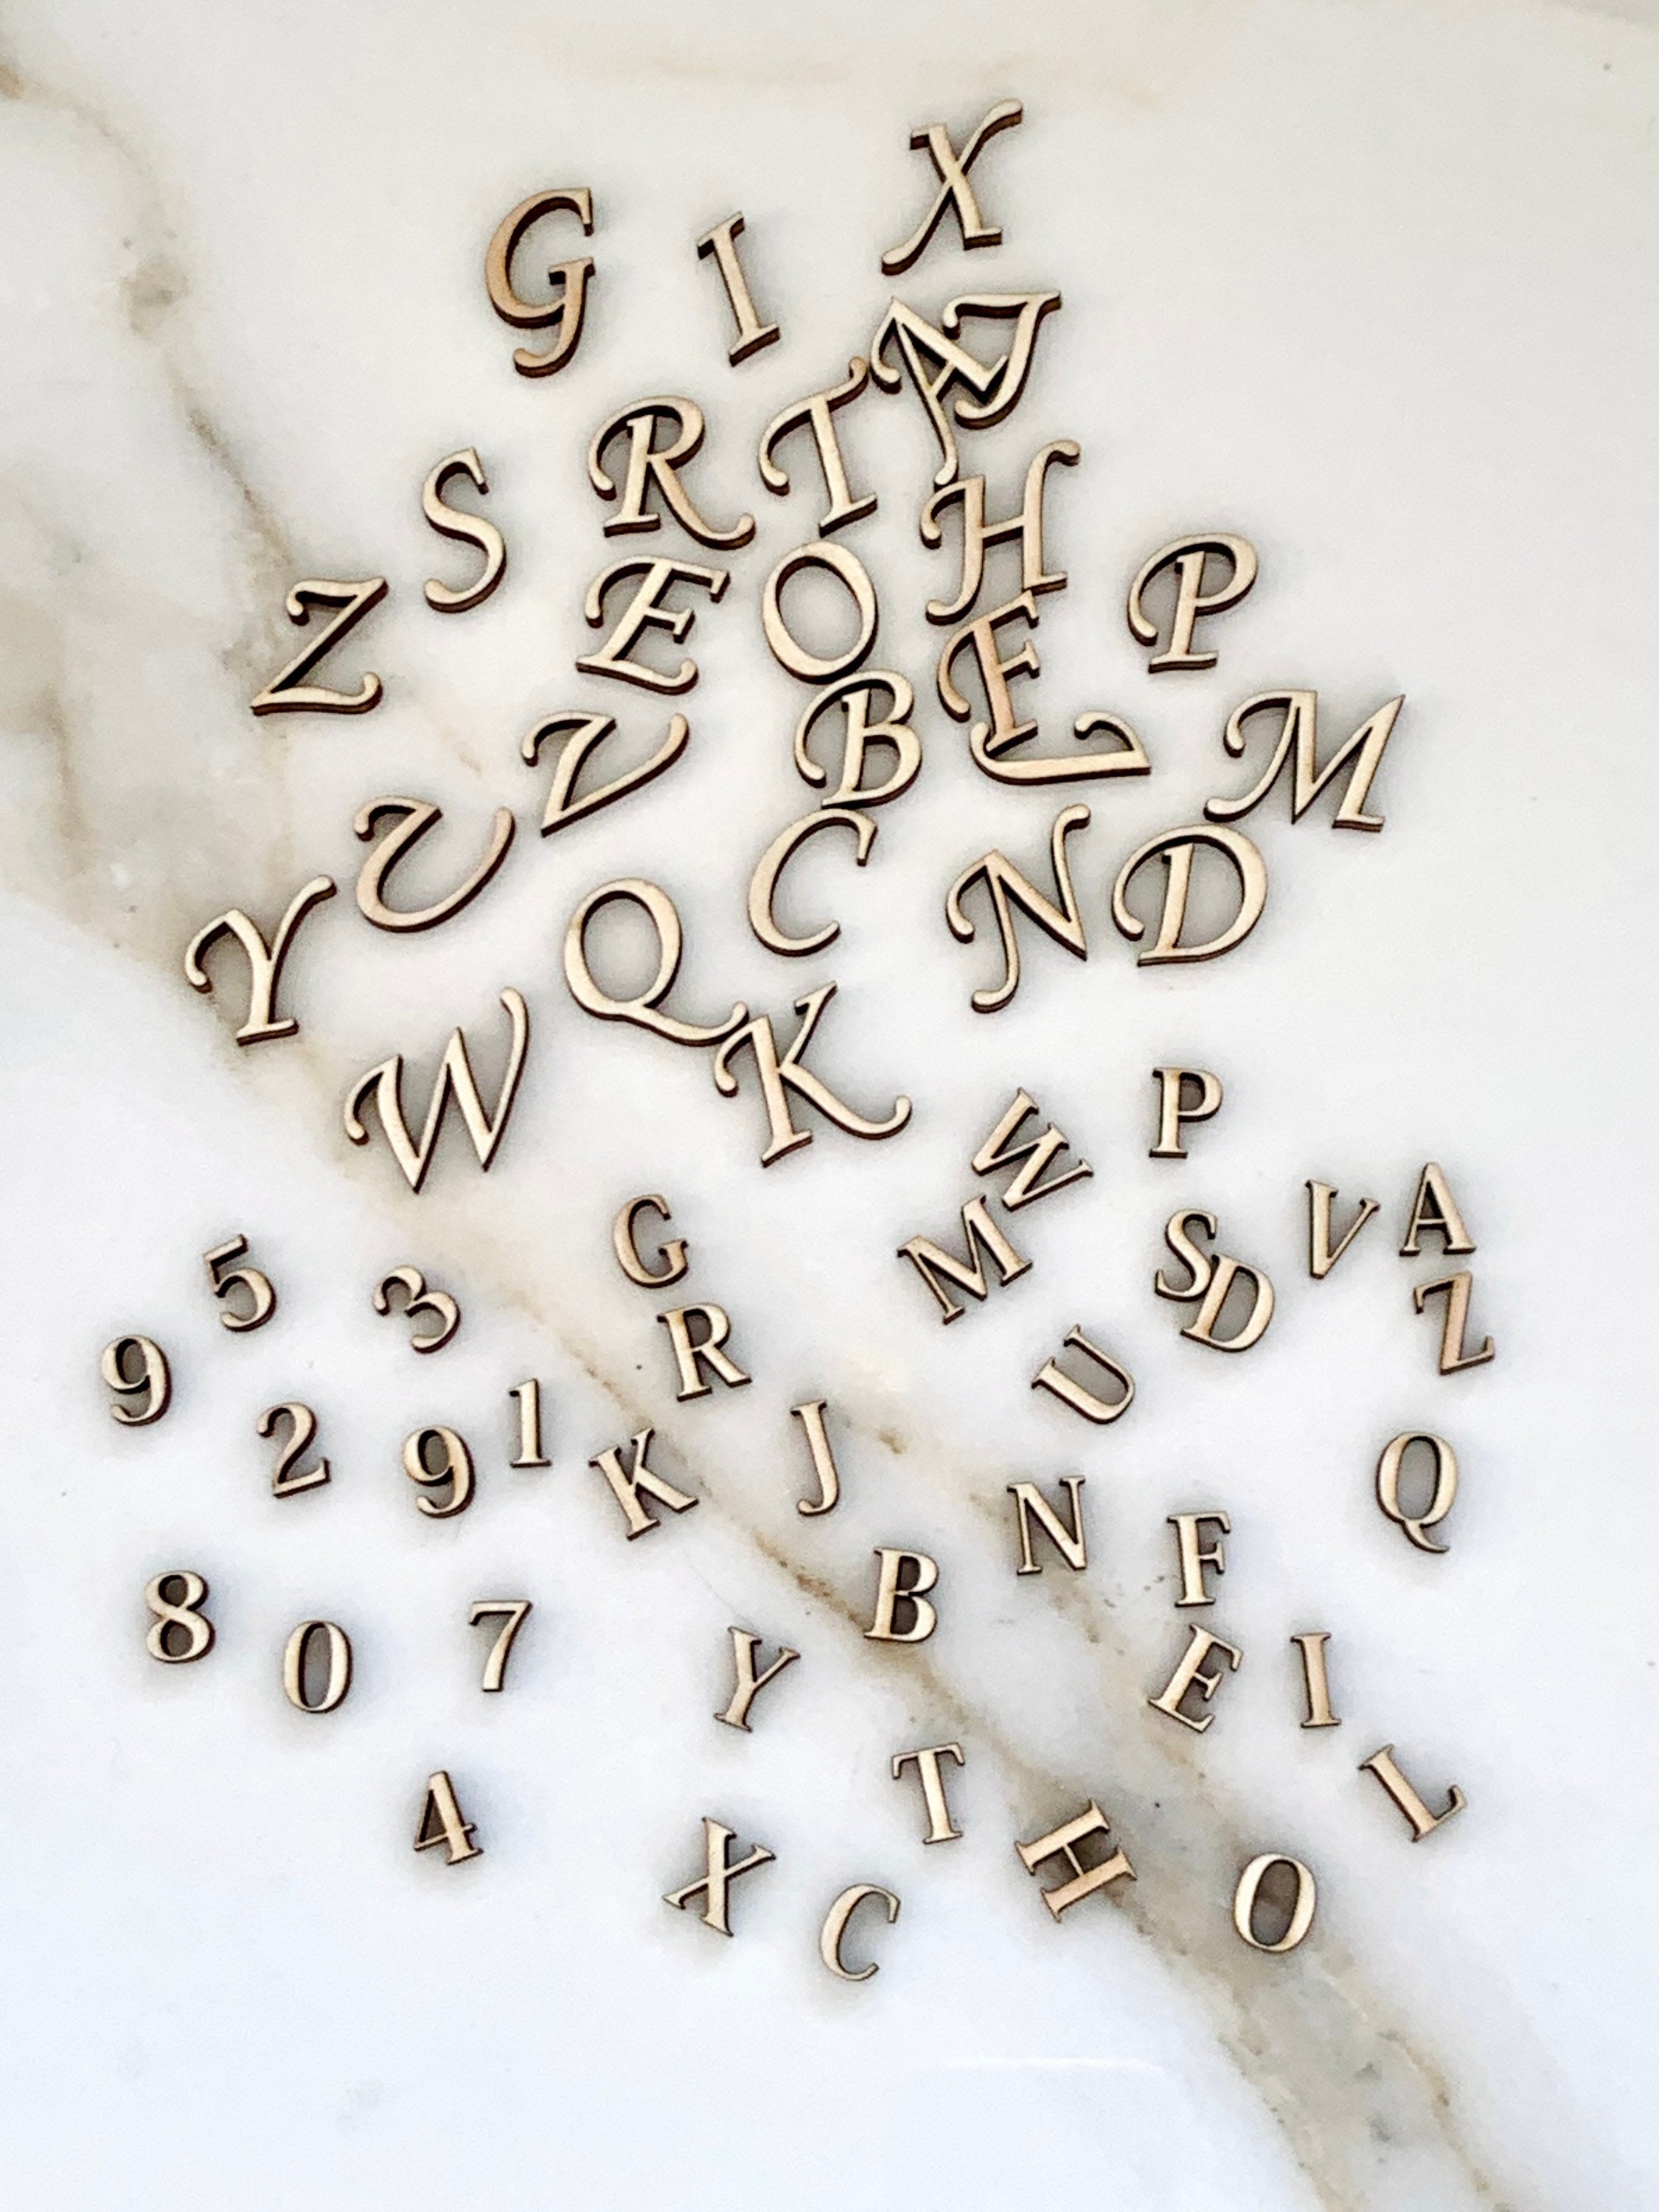 MAGICLULU Letras del alfabeto de madera, 100 letras pequeñas del